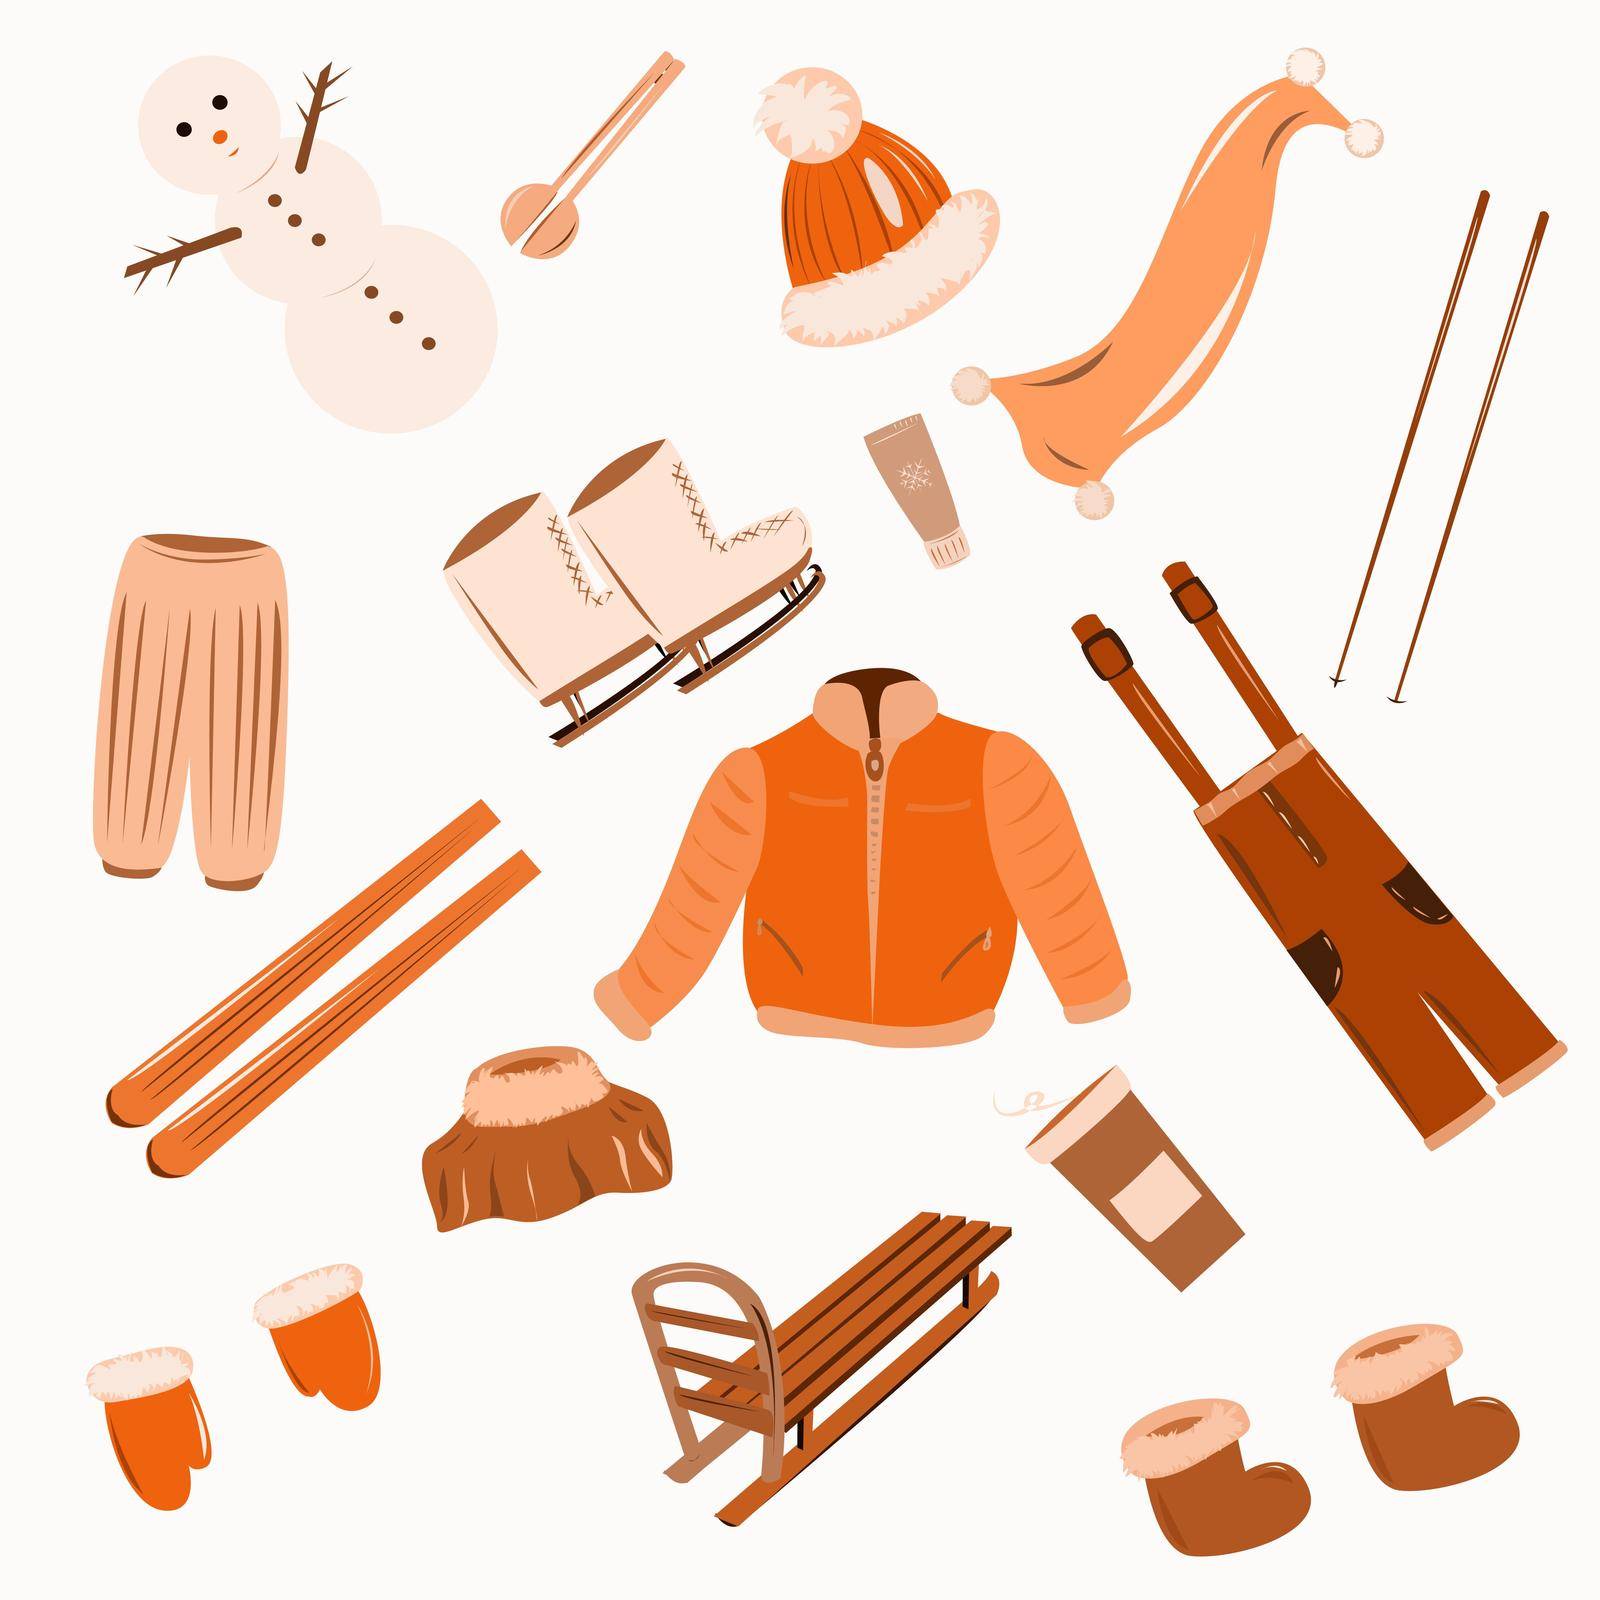 The set of items of winter clothing by EvgeniyaEgorova